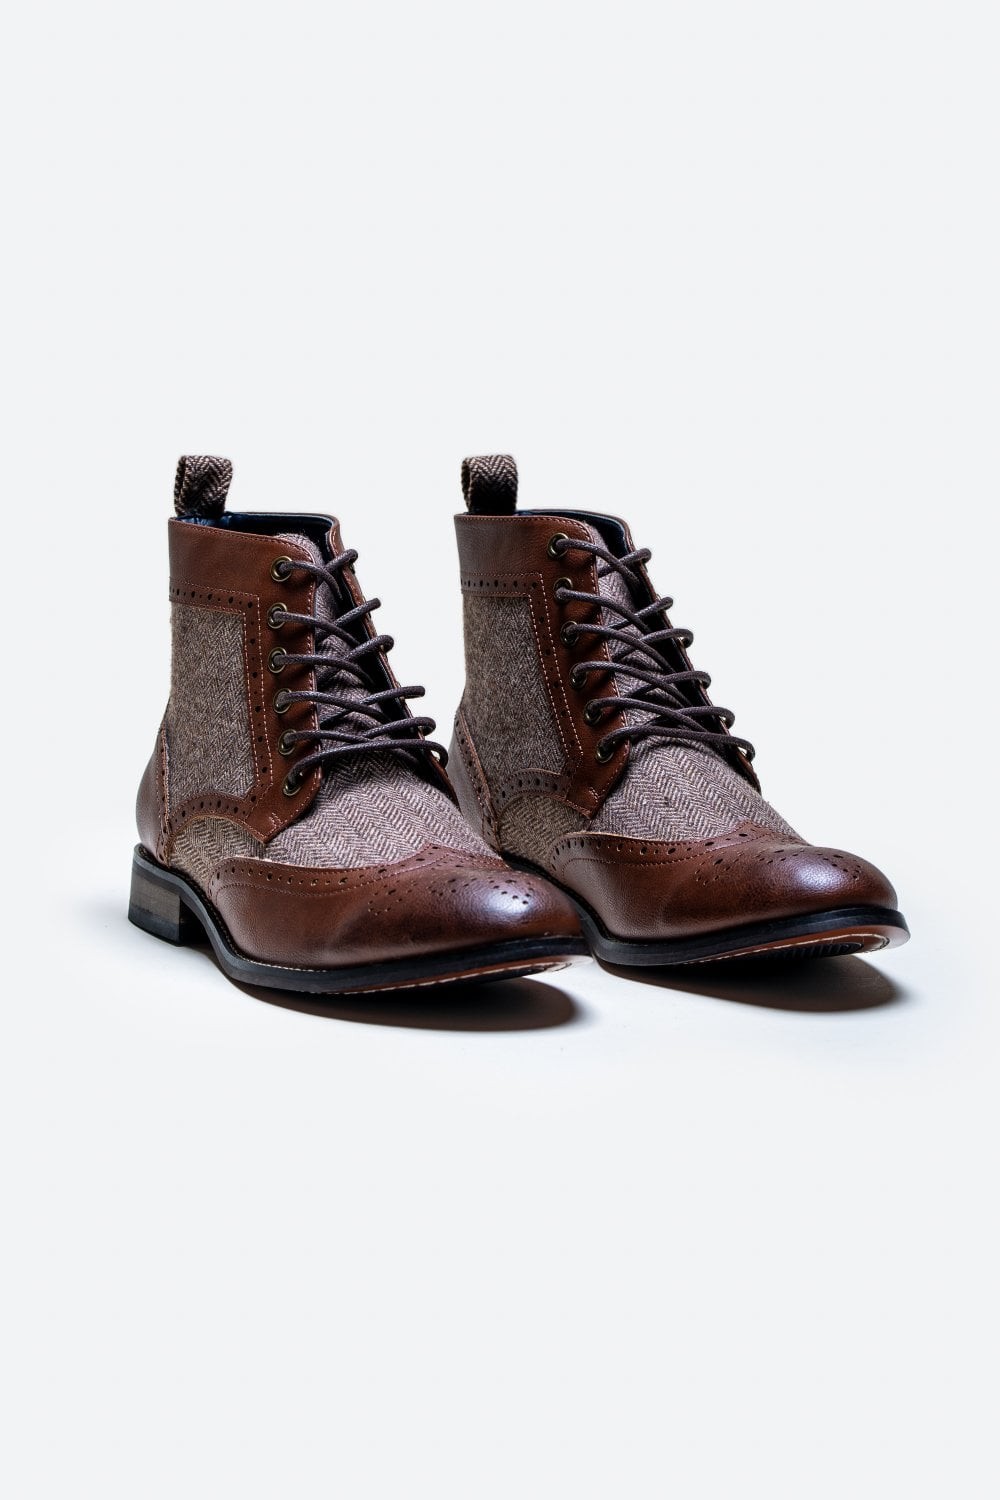 Men's Ankle Boots Lace Up Brogue Shoes - JONES